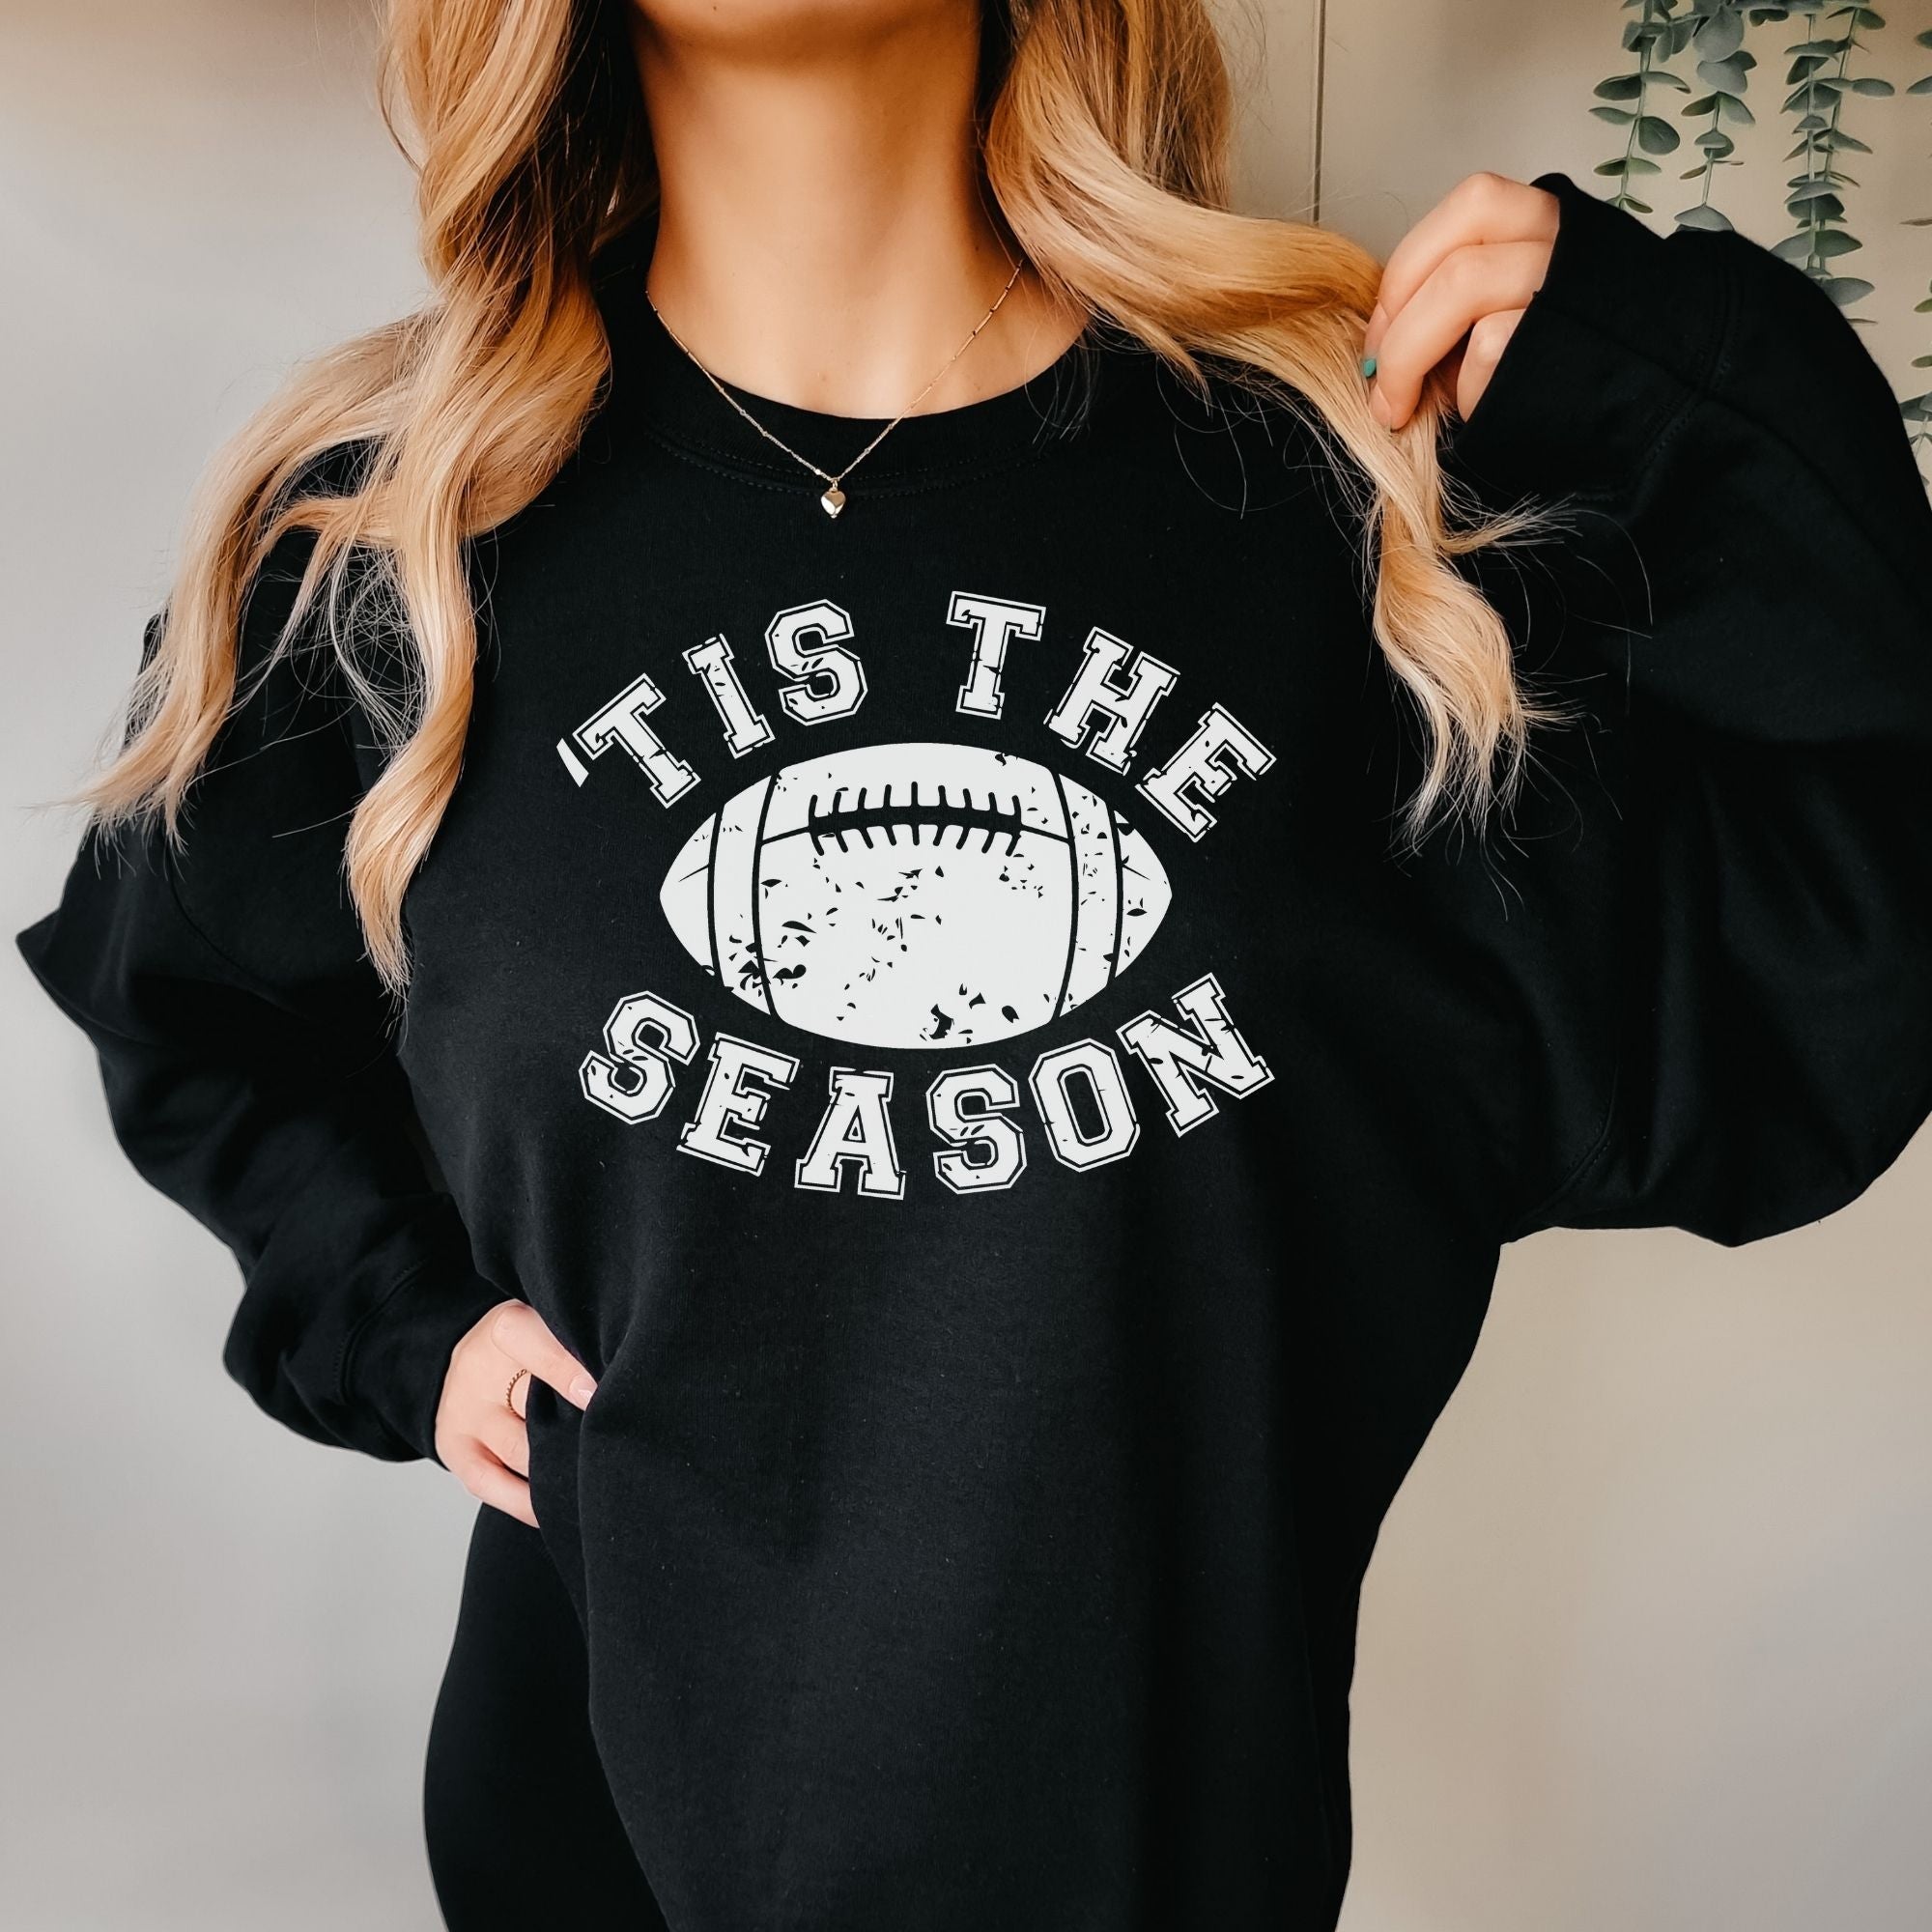 Football Sweatshirt - Football Season Hoodie or Crewneck *UNISEX FIT*-Sweatshirts-208 Tees Wholesale, Idaho